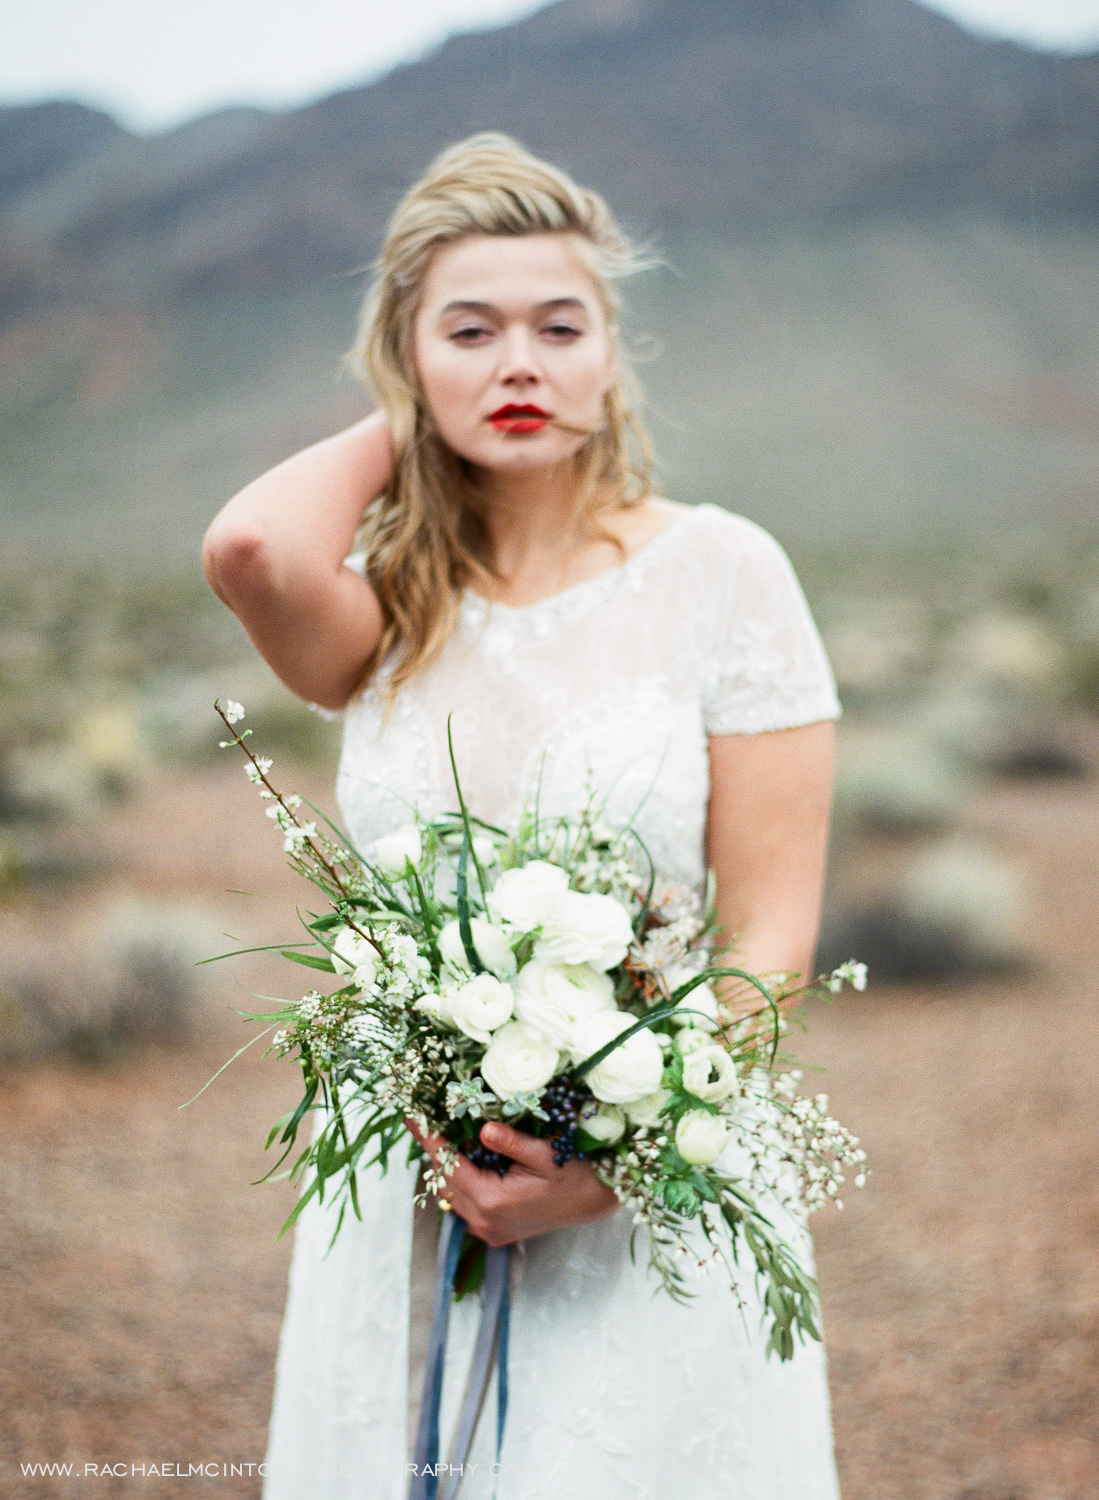 Khrystyana-styled-shoot-desert-wedding-6.jpg